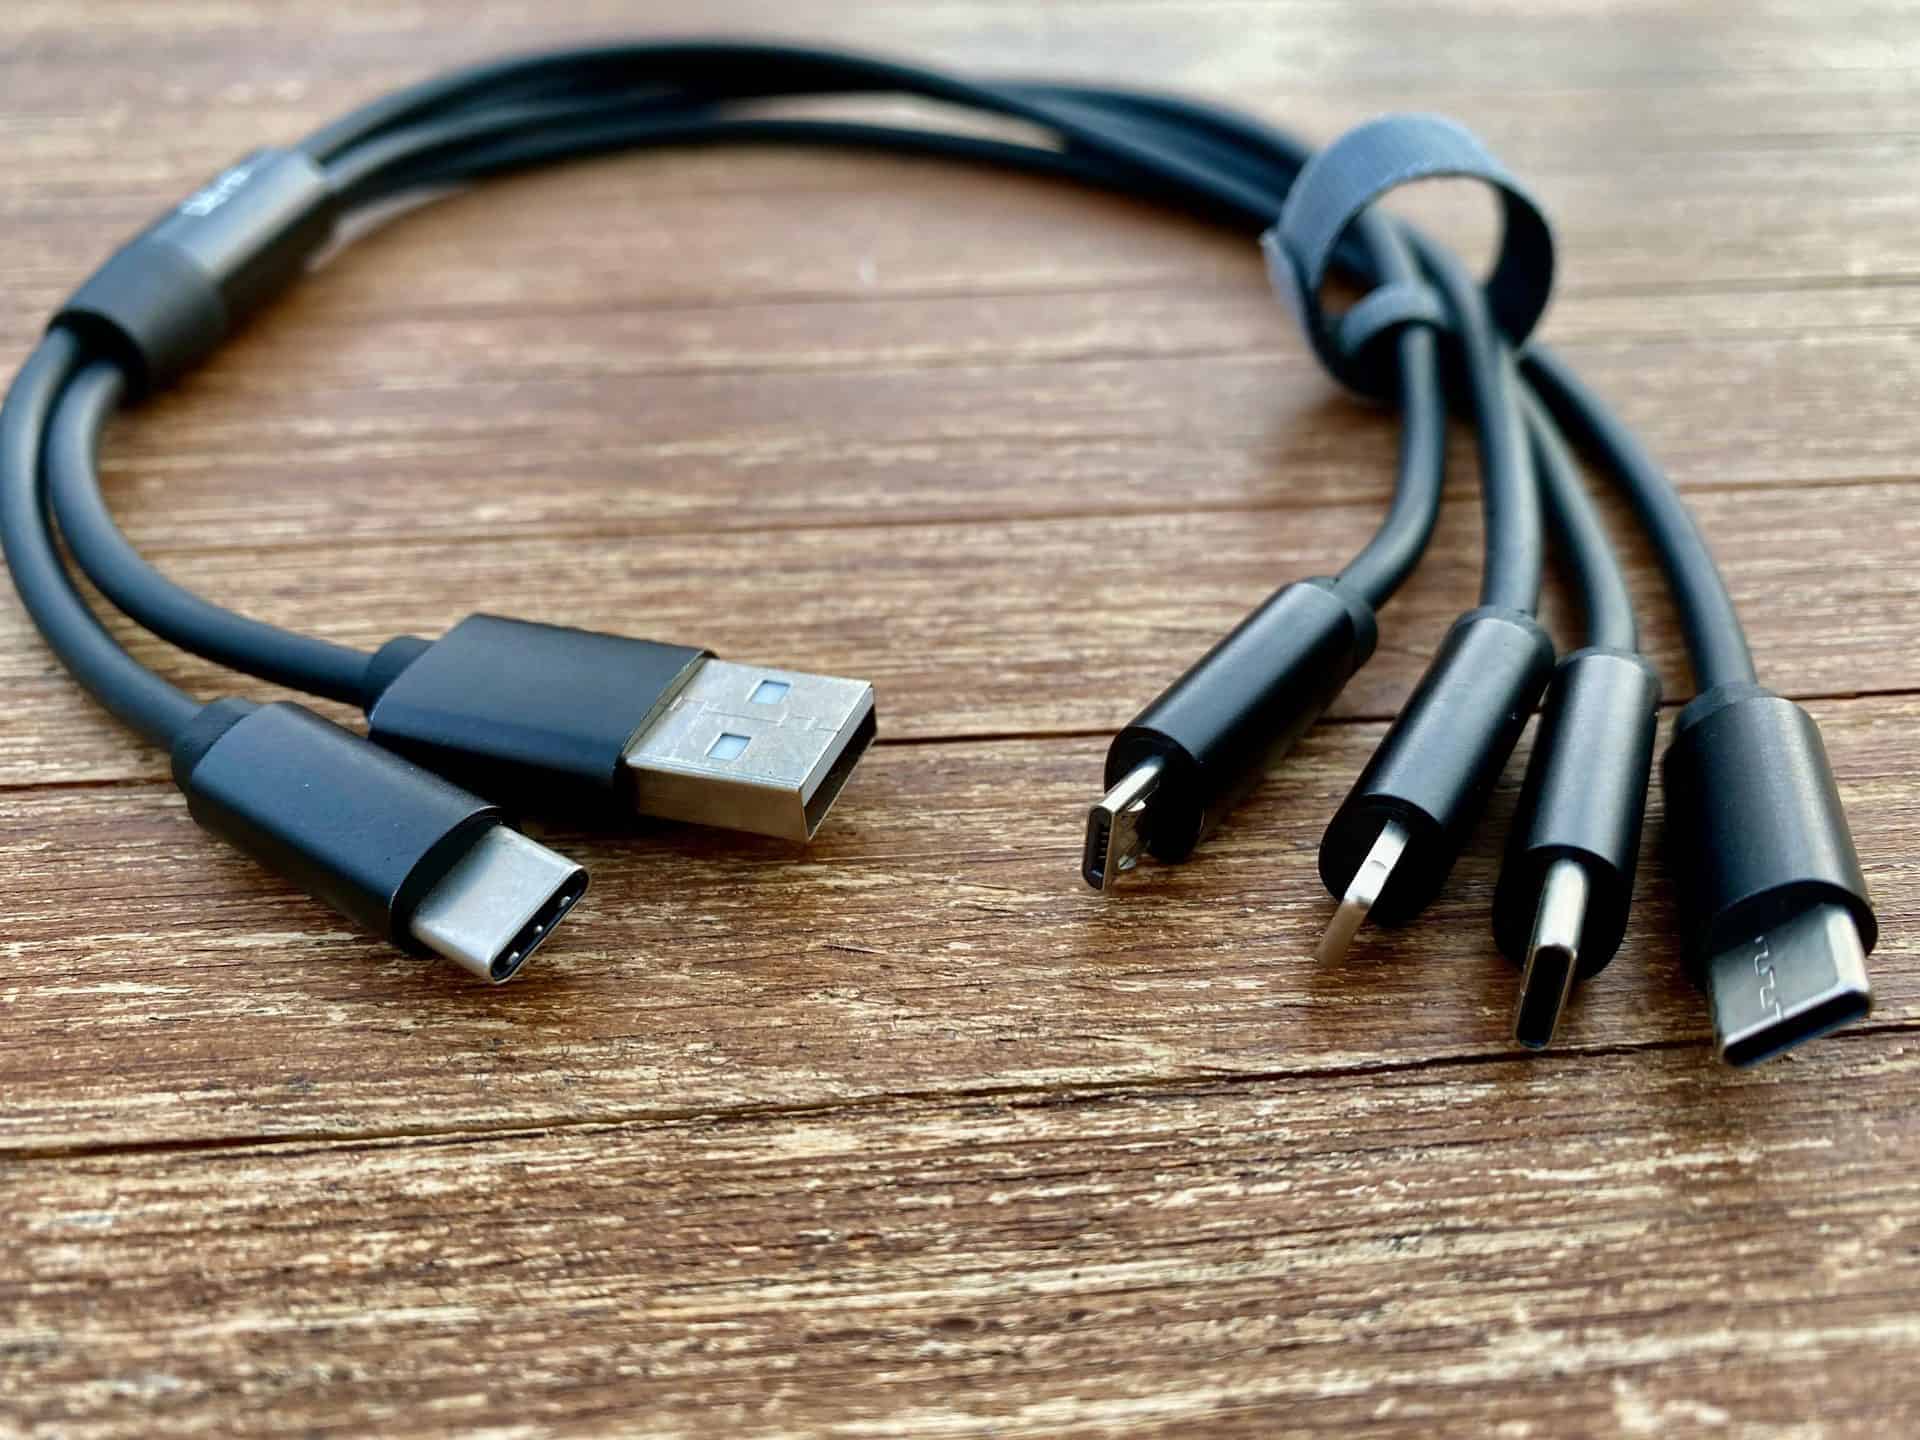 Bestes All-in-one Kabel für Micro-USB, USB-C und Lightning und